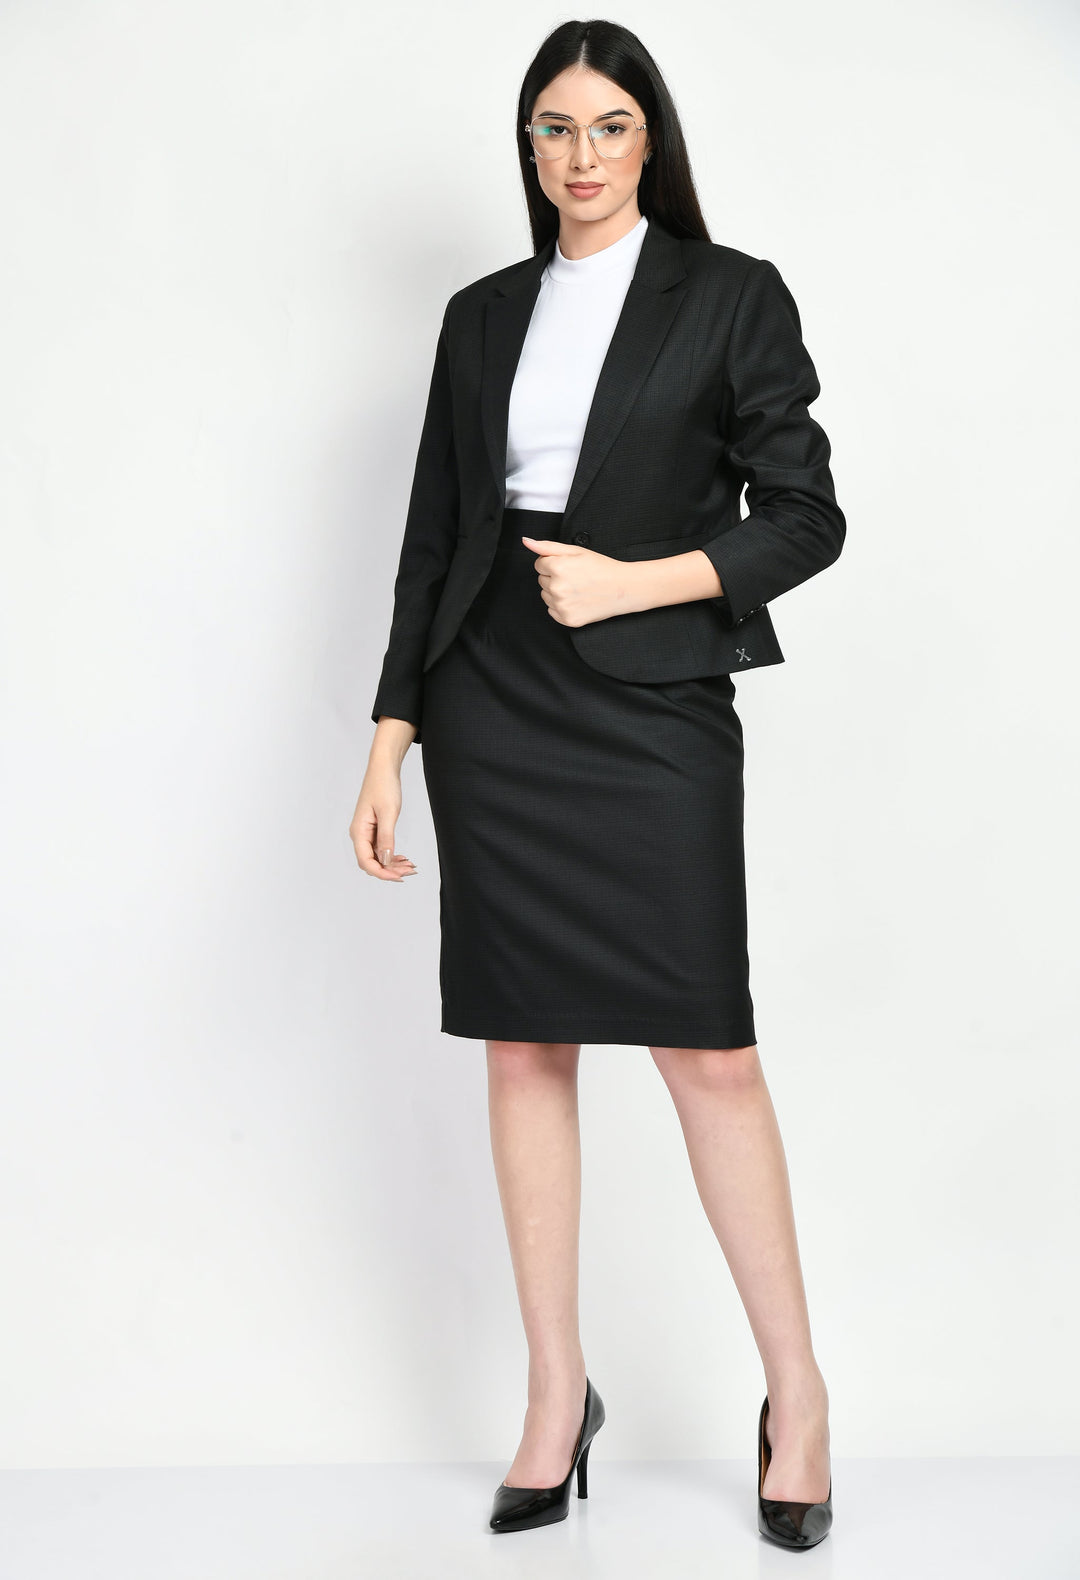 Black-Cotton-Blend-Motivation-Short-Blazer-Pencil-Skirt-Suit